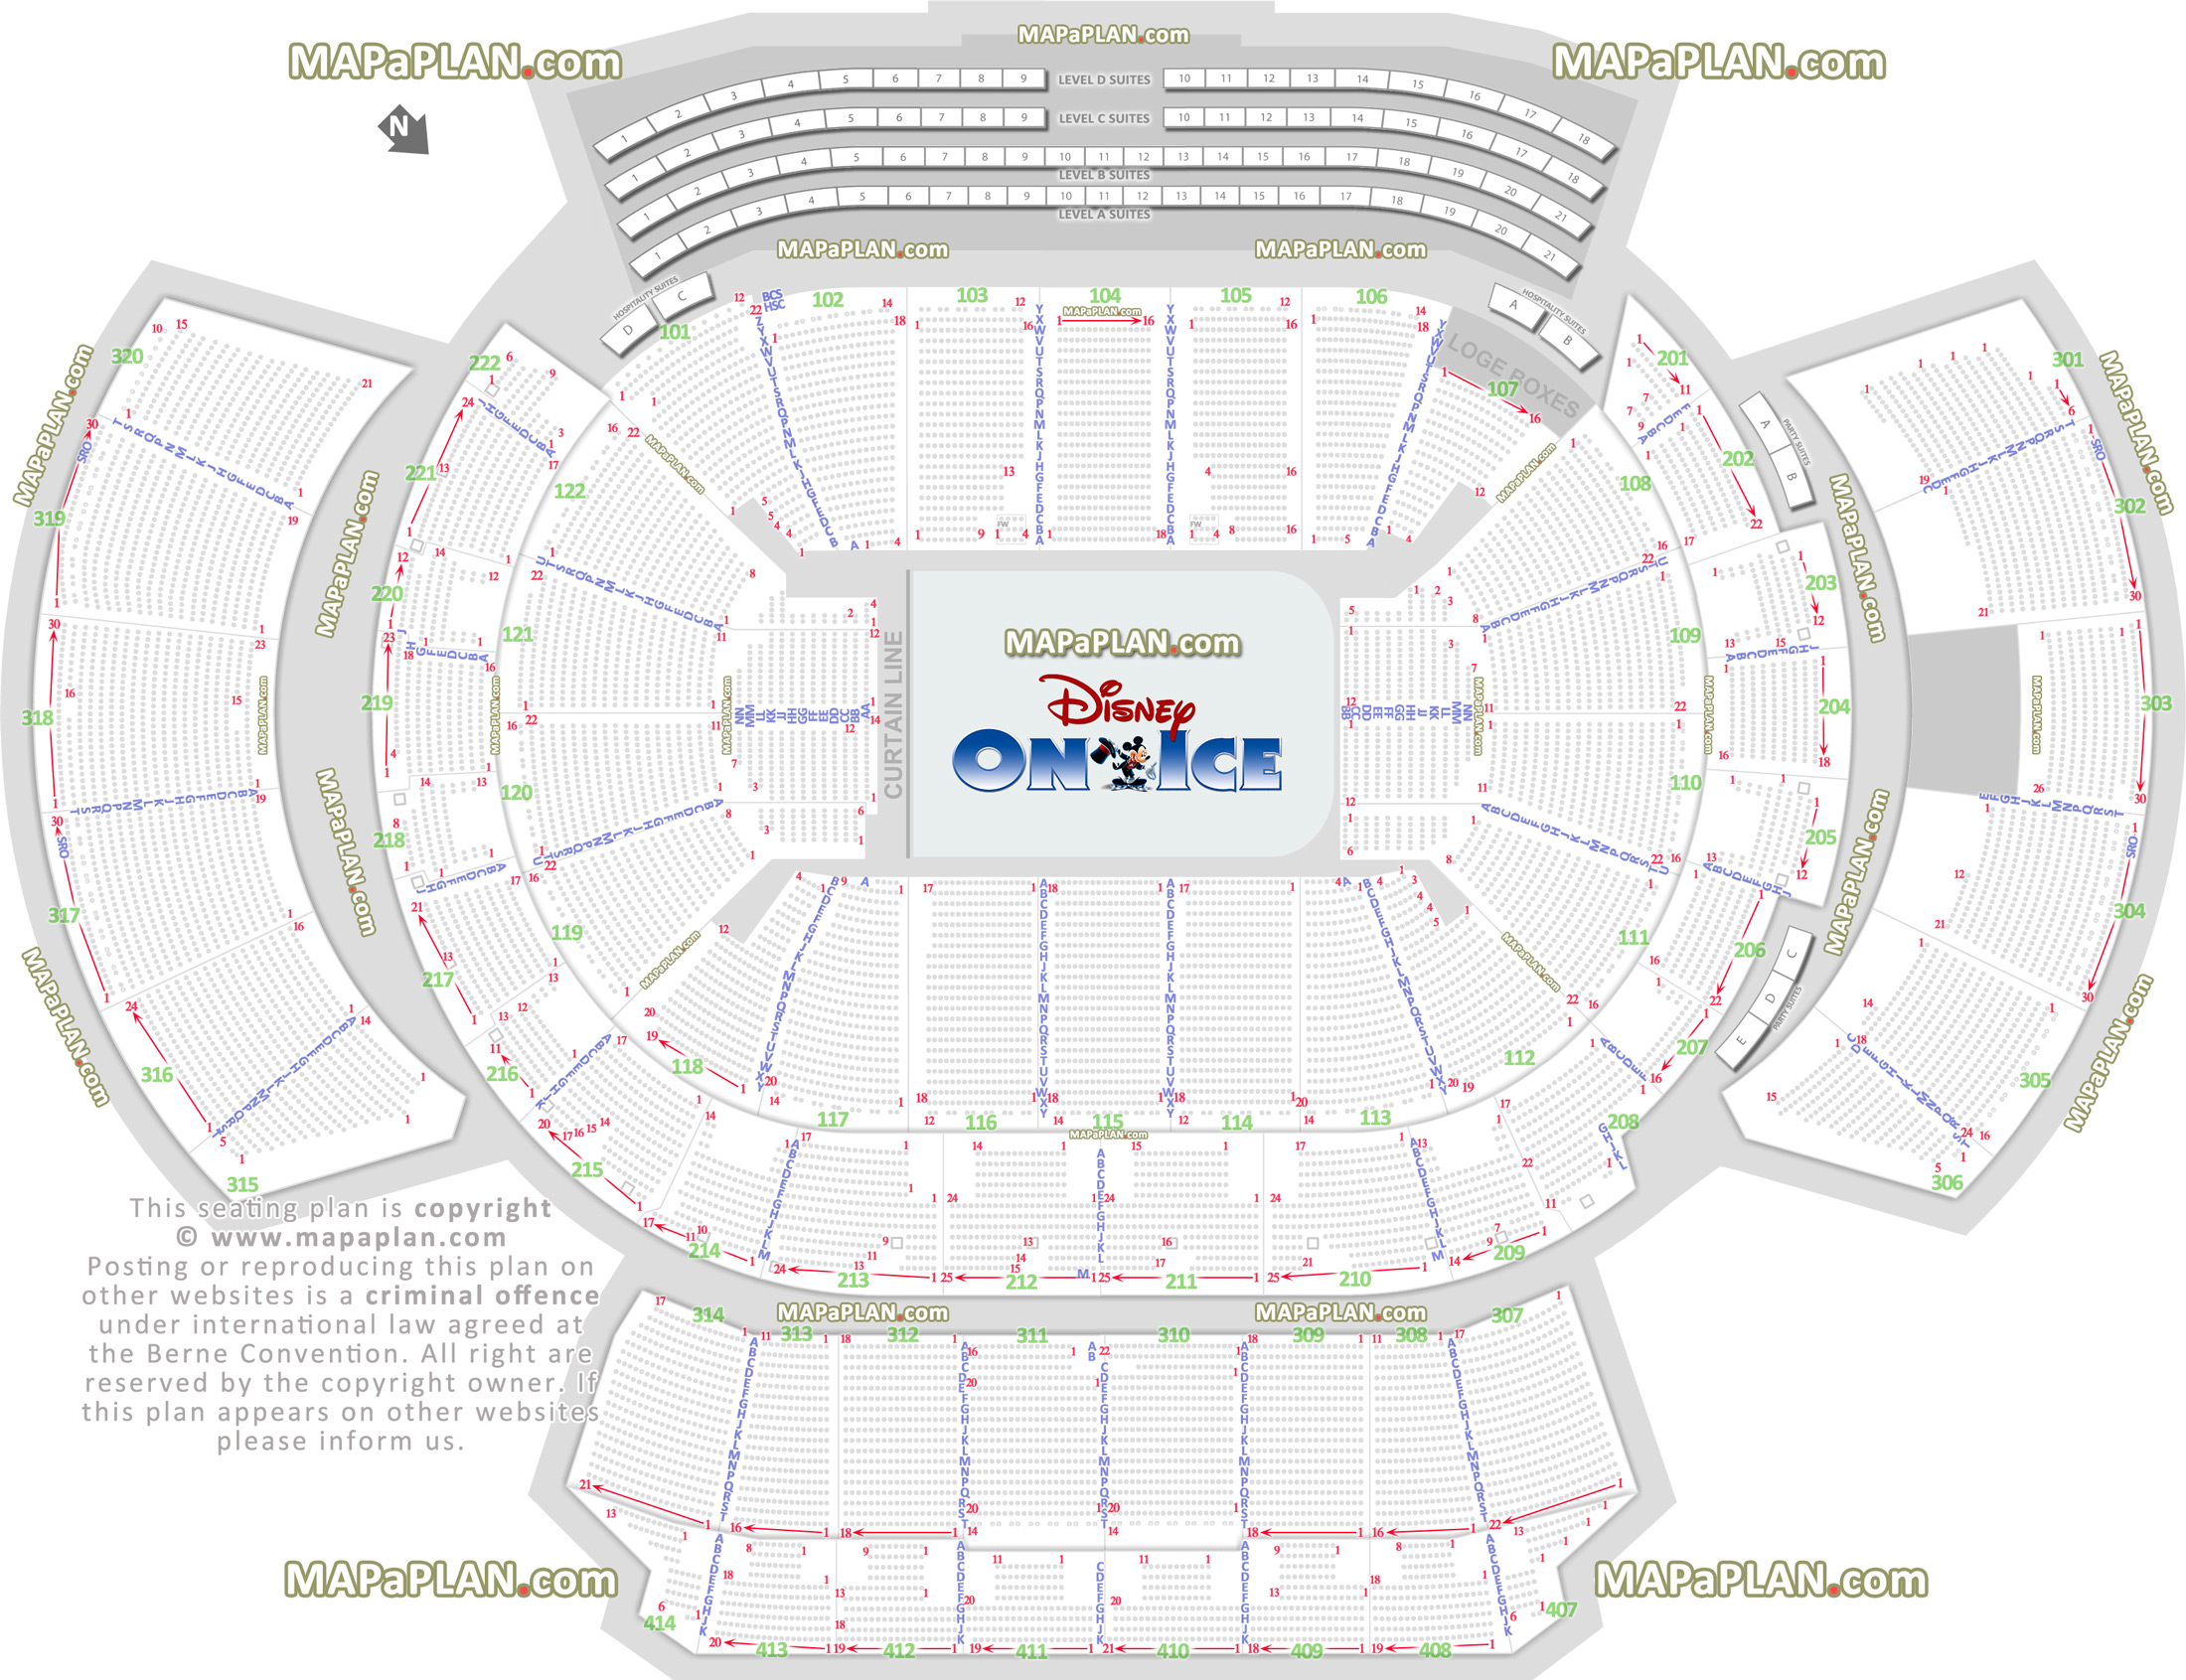 Atlanta Philips Arena Disney on Ice show mezzanine